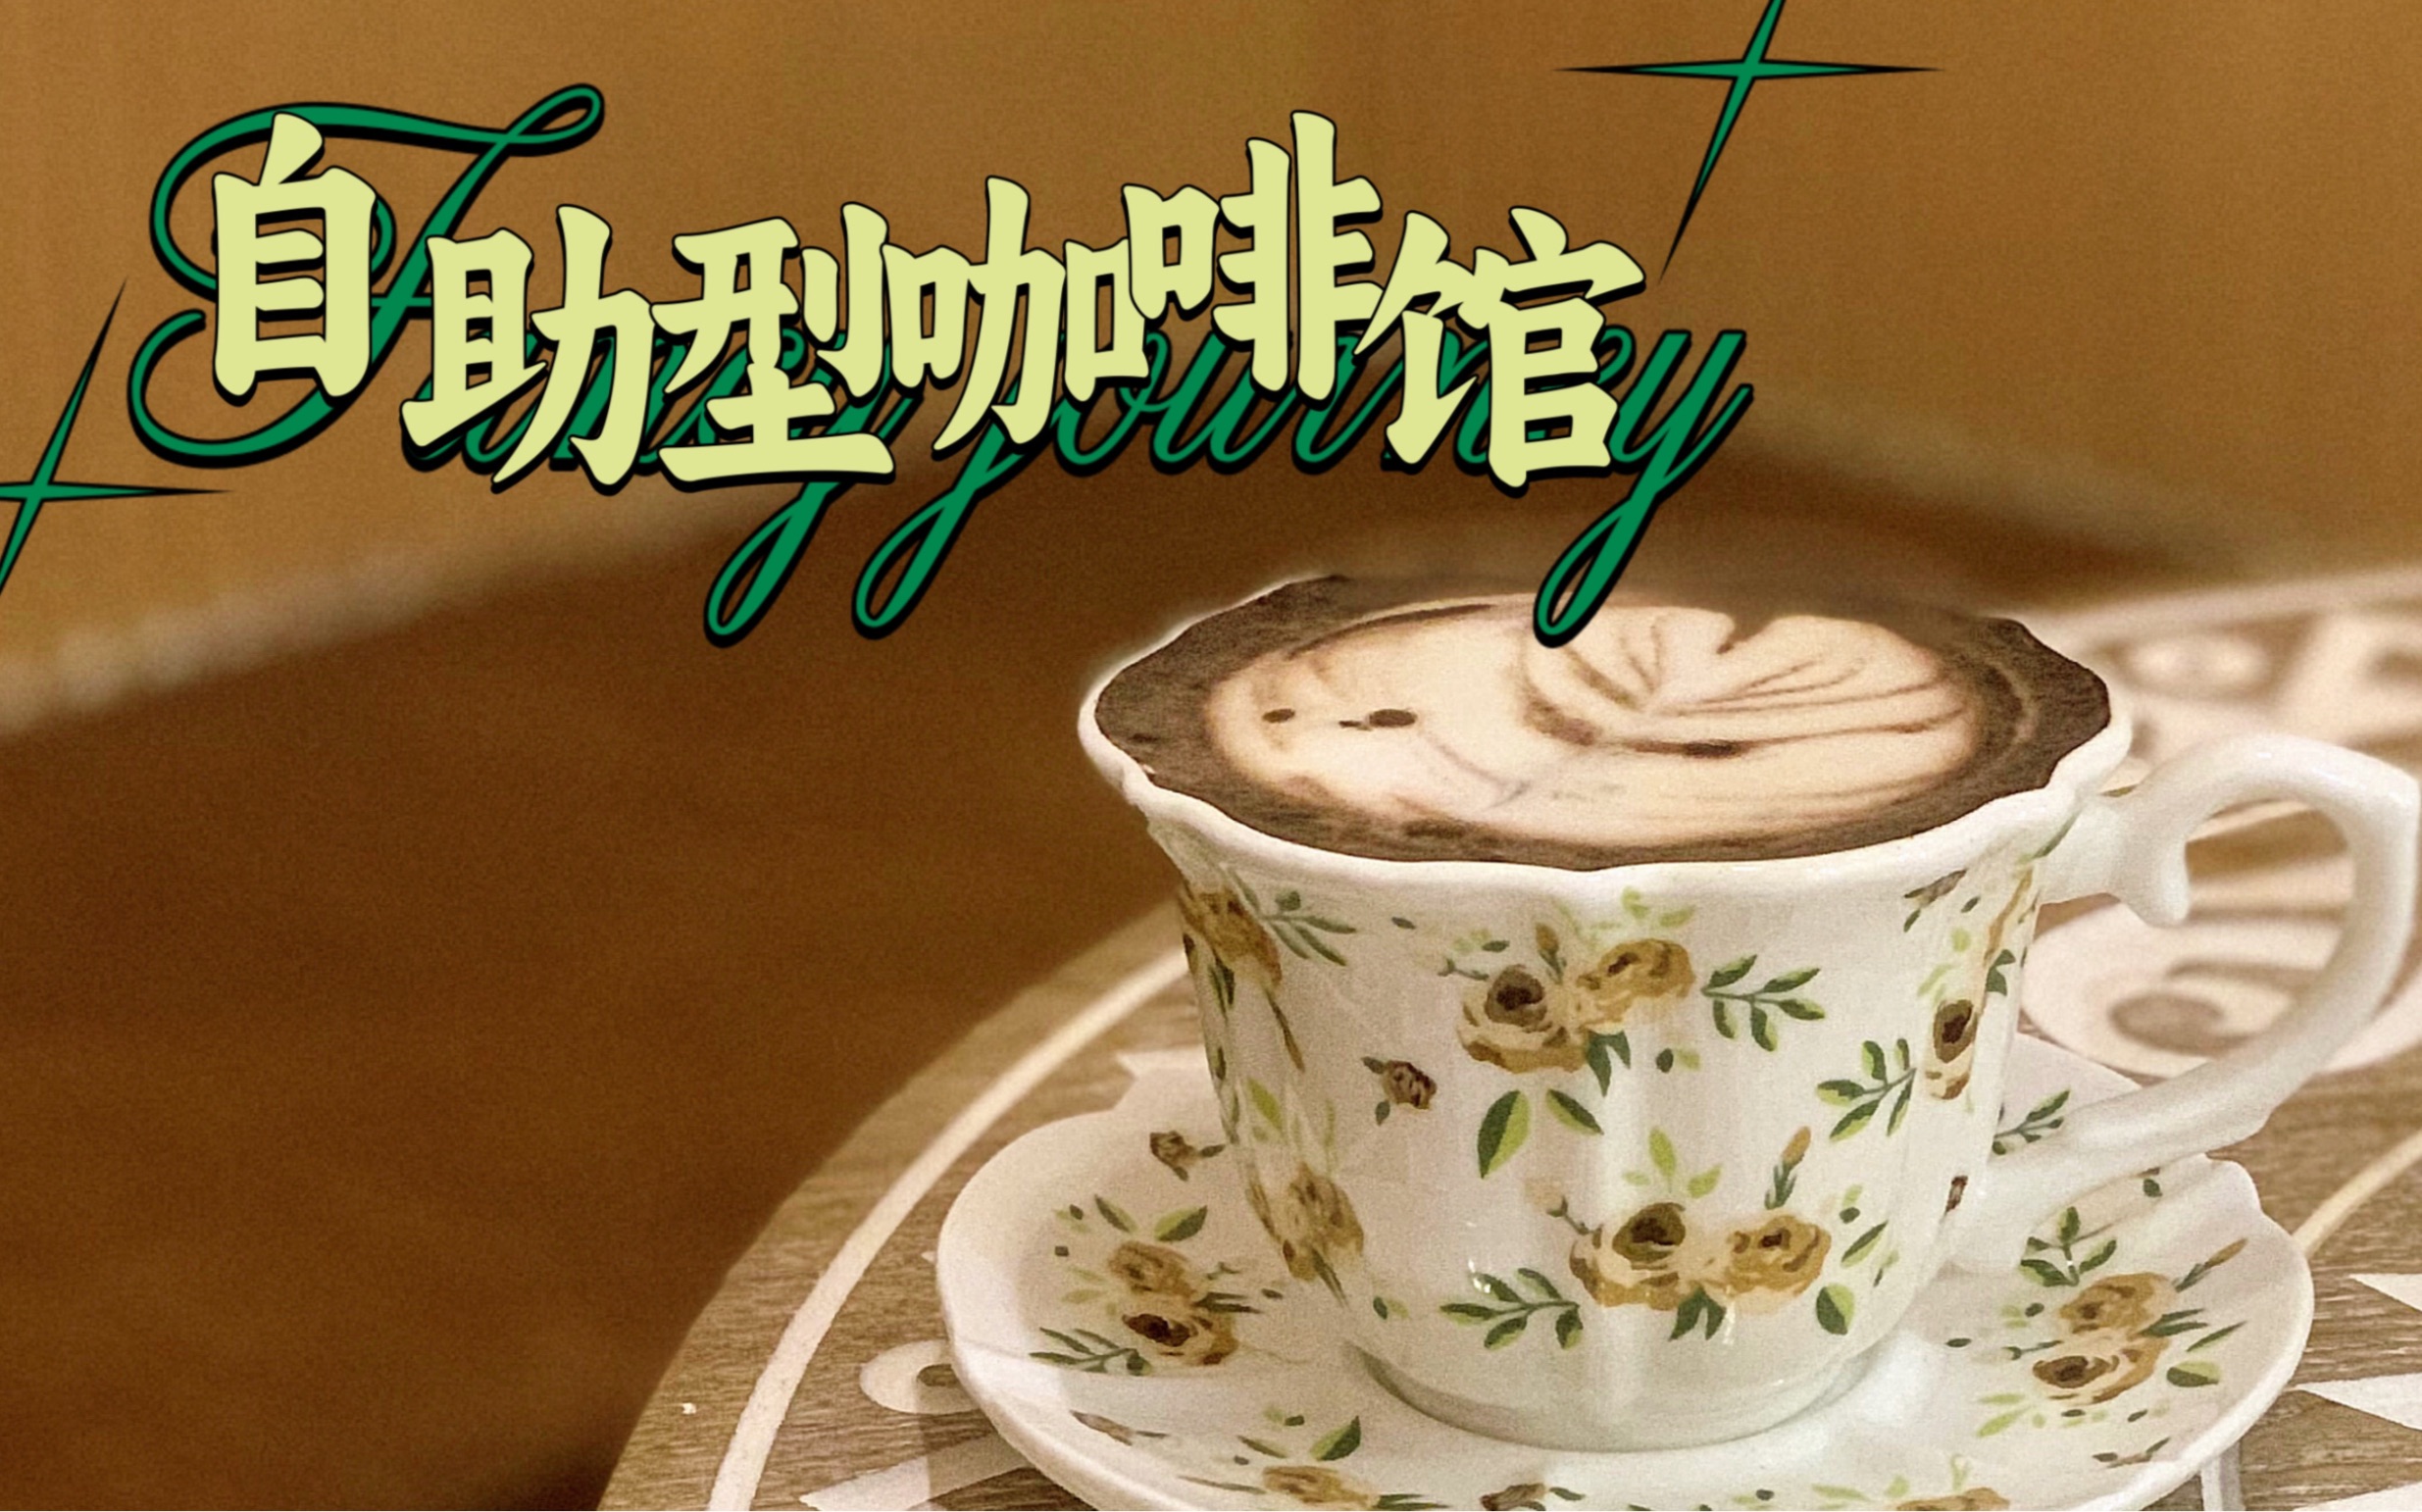 一家让客人自己做手冲的咖啡店，就在广州东圃｜小山有雨cafe｜创业vlog｜上班日记